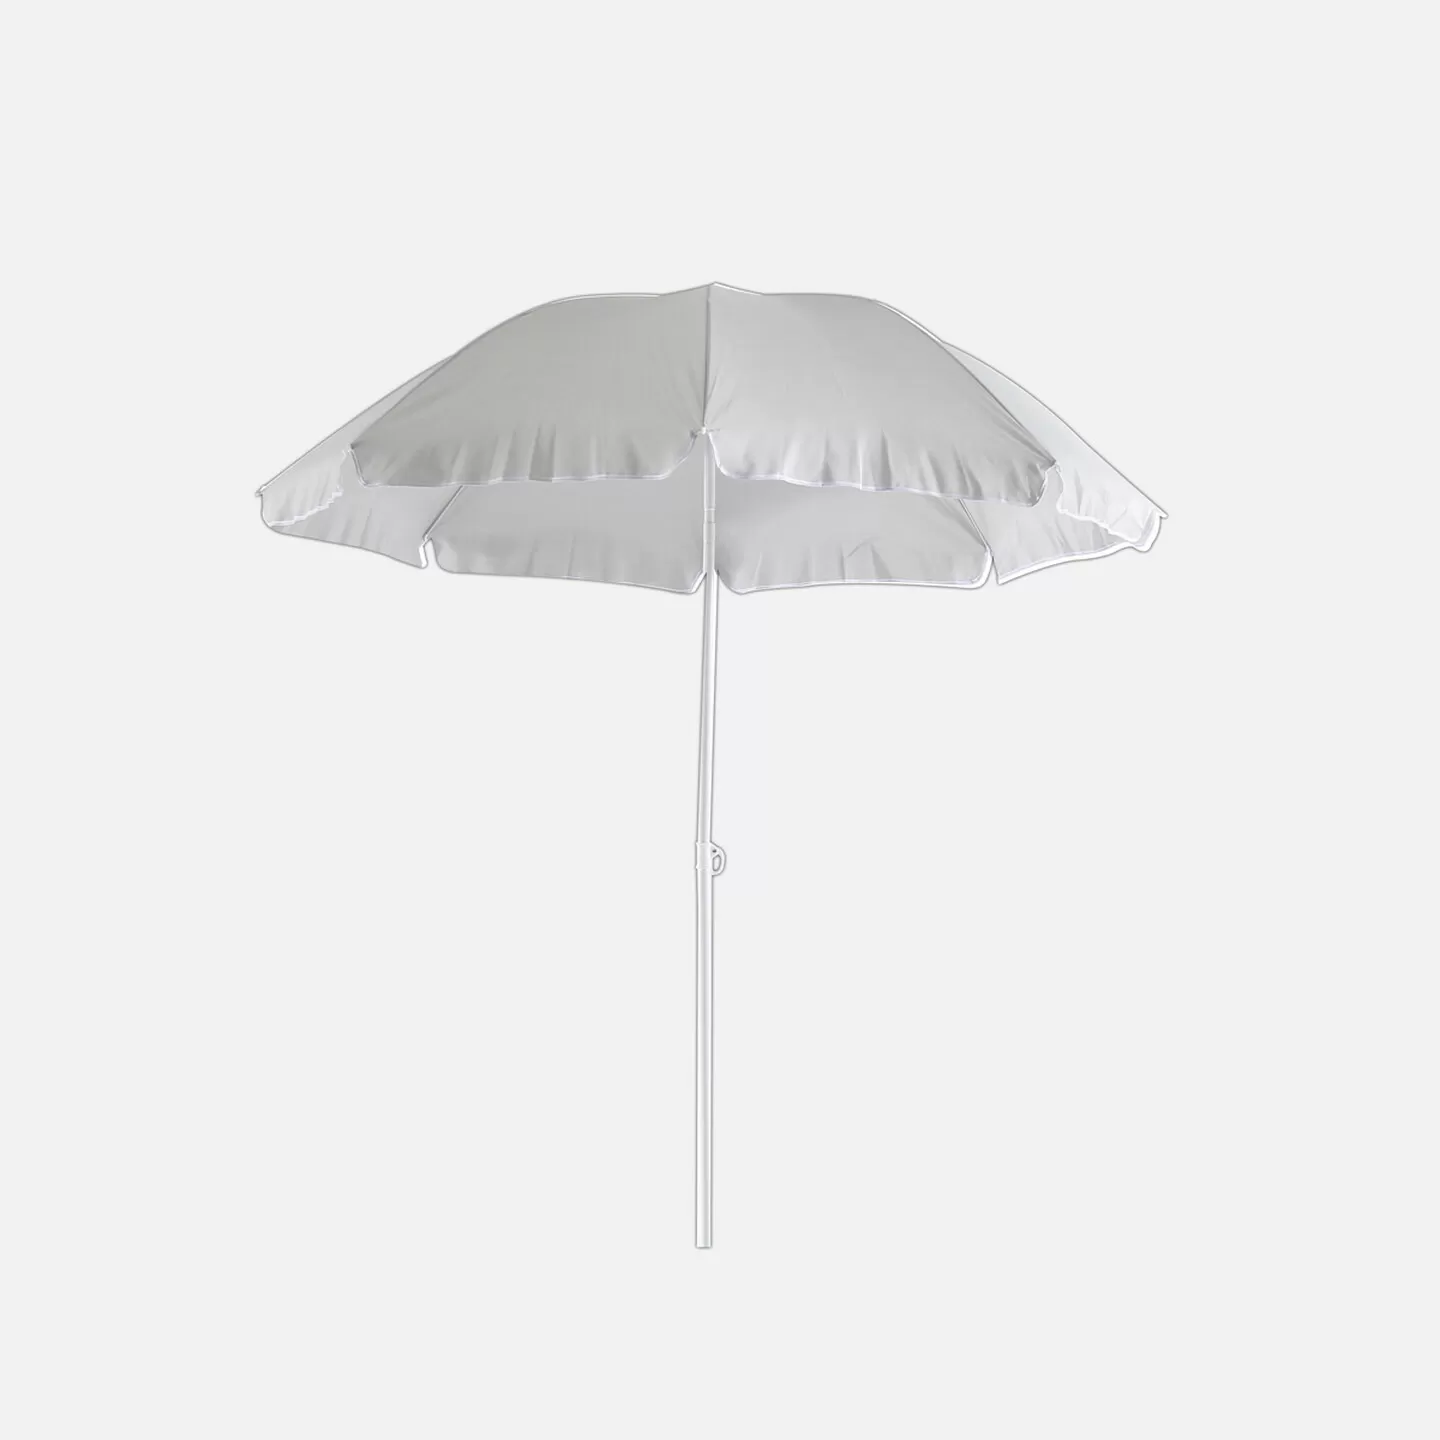 Sunfun Provence II Şemsiye Açık Gri 200 cm